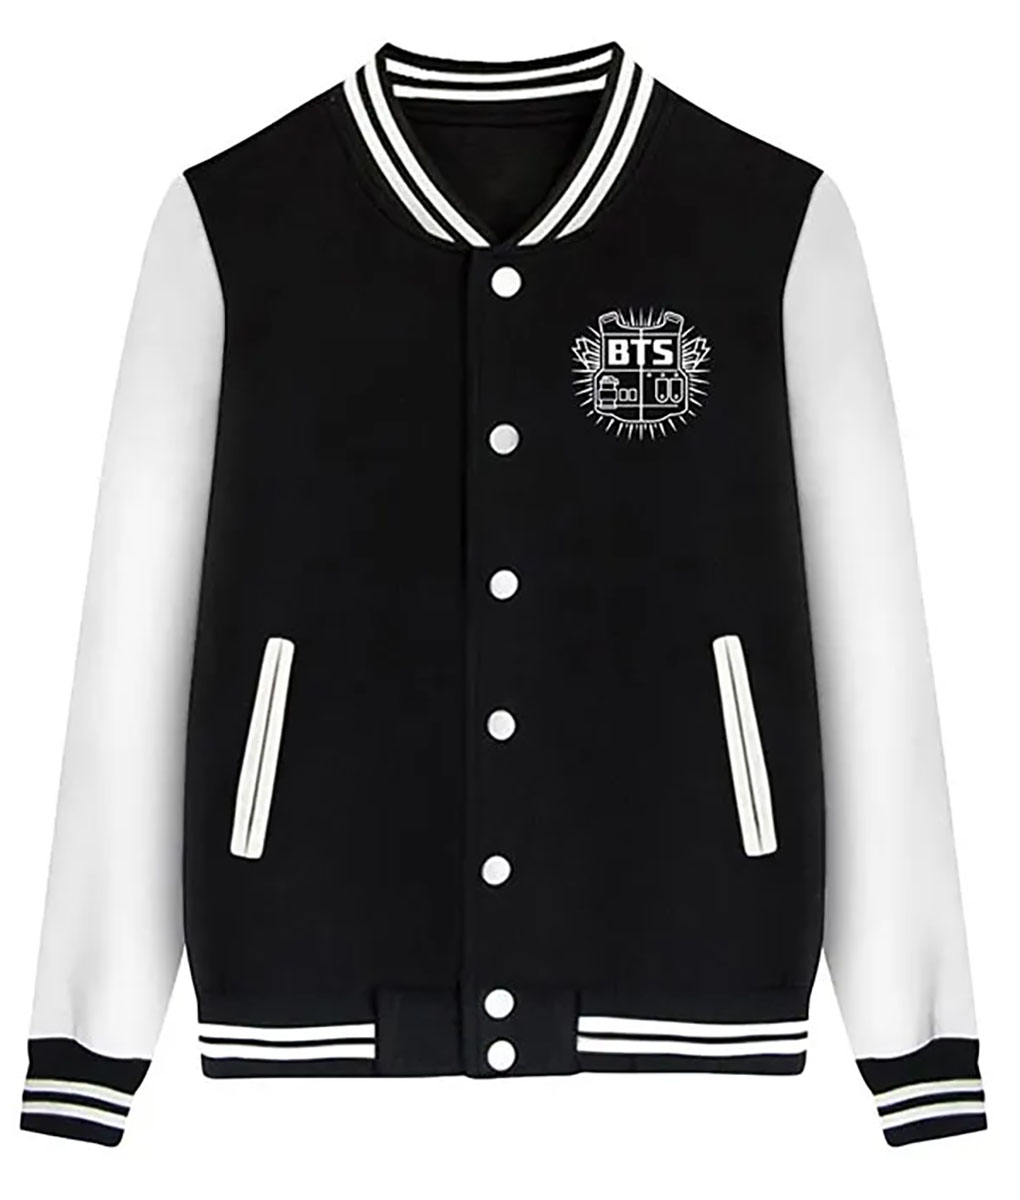 BTS J-hope Black Varsity Jacket (1)